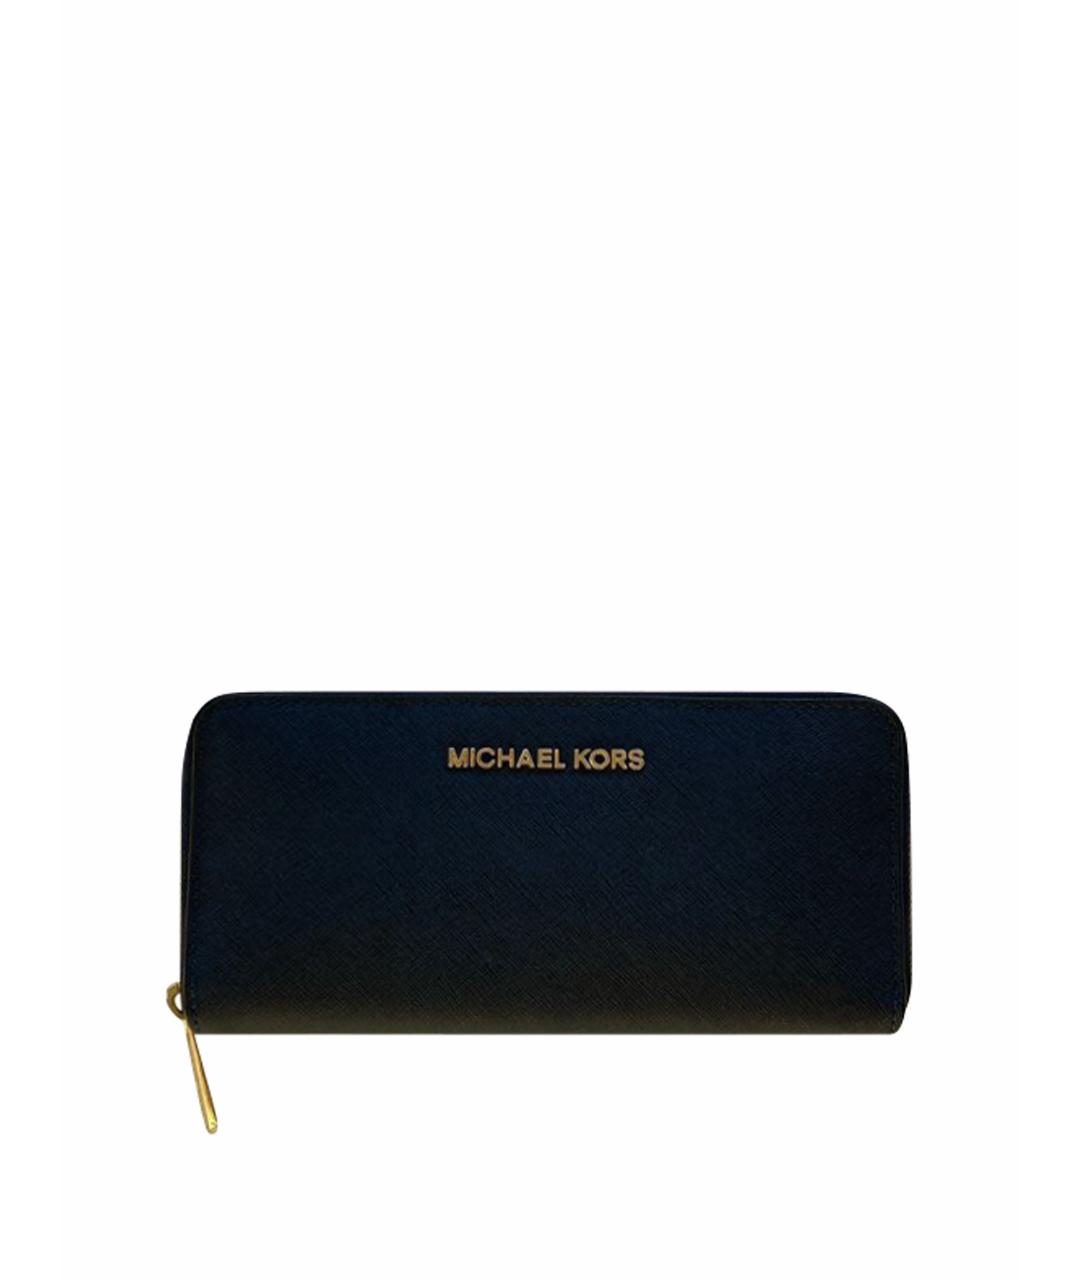 MICHAEL KORS Синий кошелек из искусственной кожи, фото 1